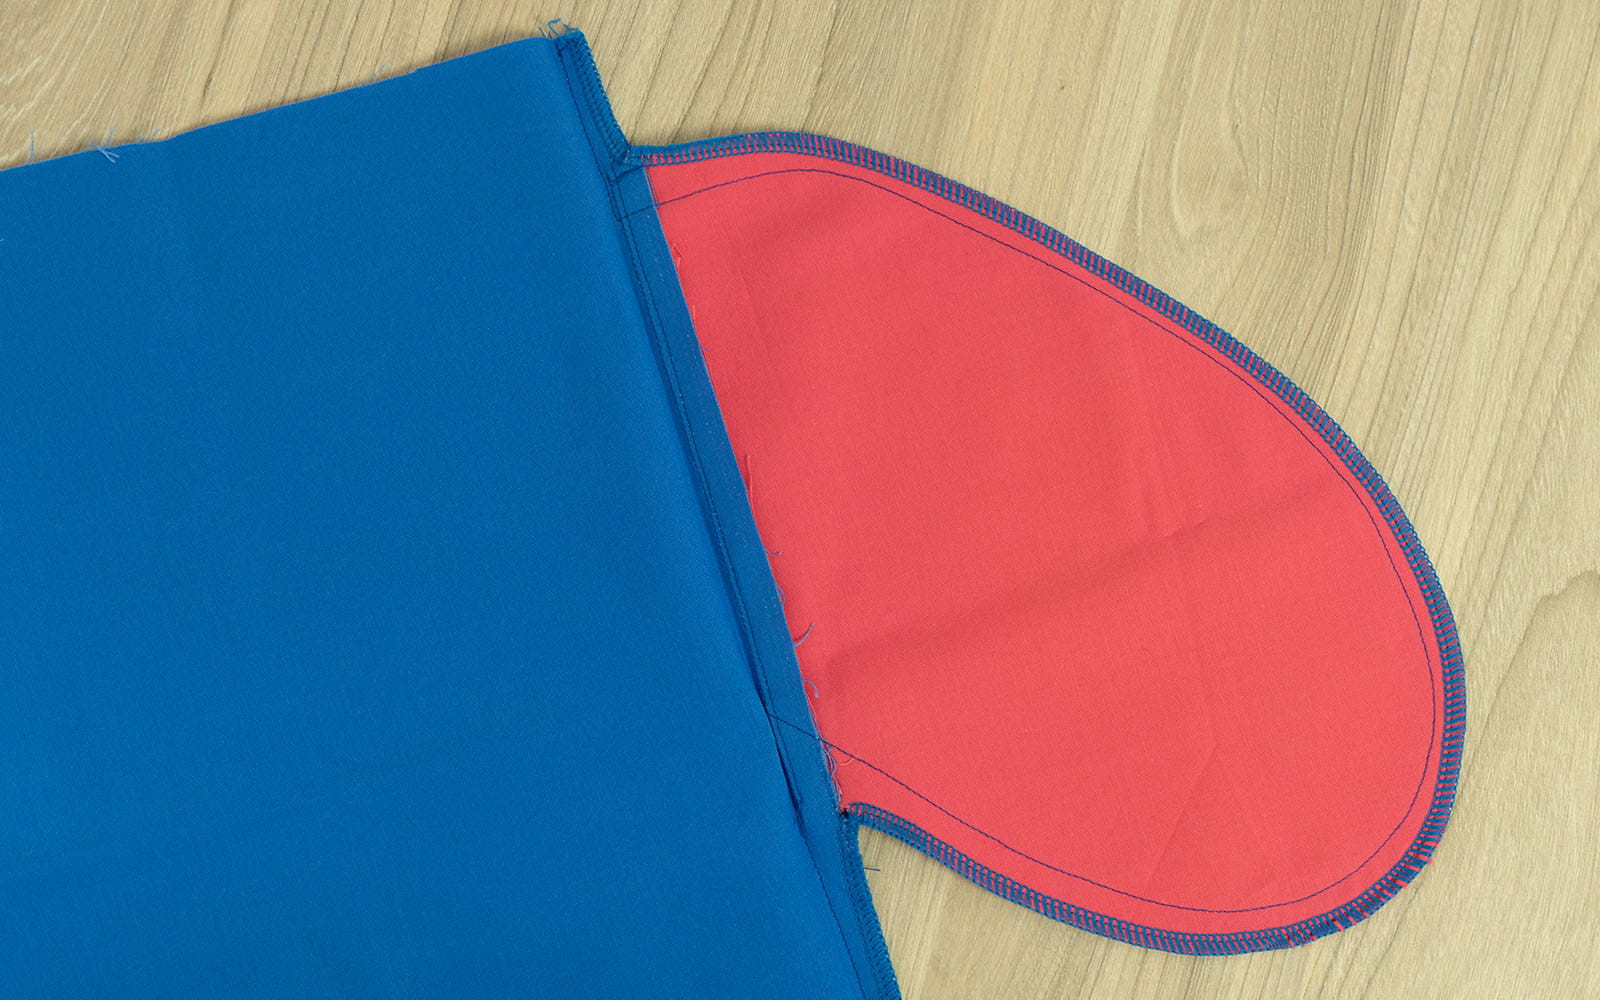 Afgewerkte roze zak vastgenaaid aan blauwe stof op houten ondergrond 